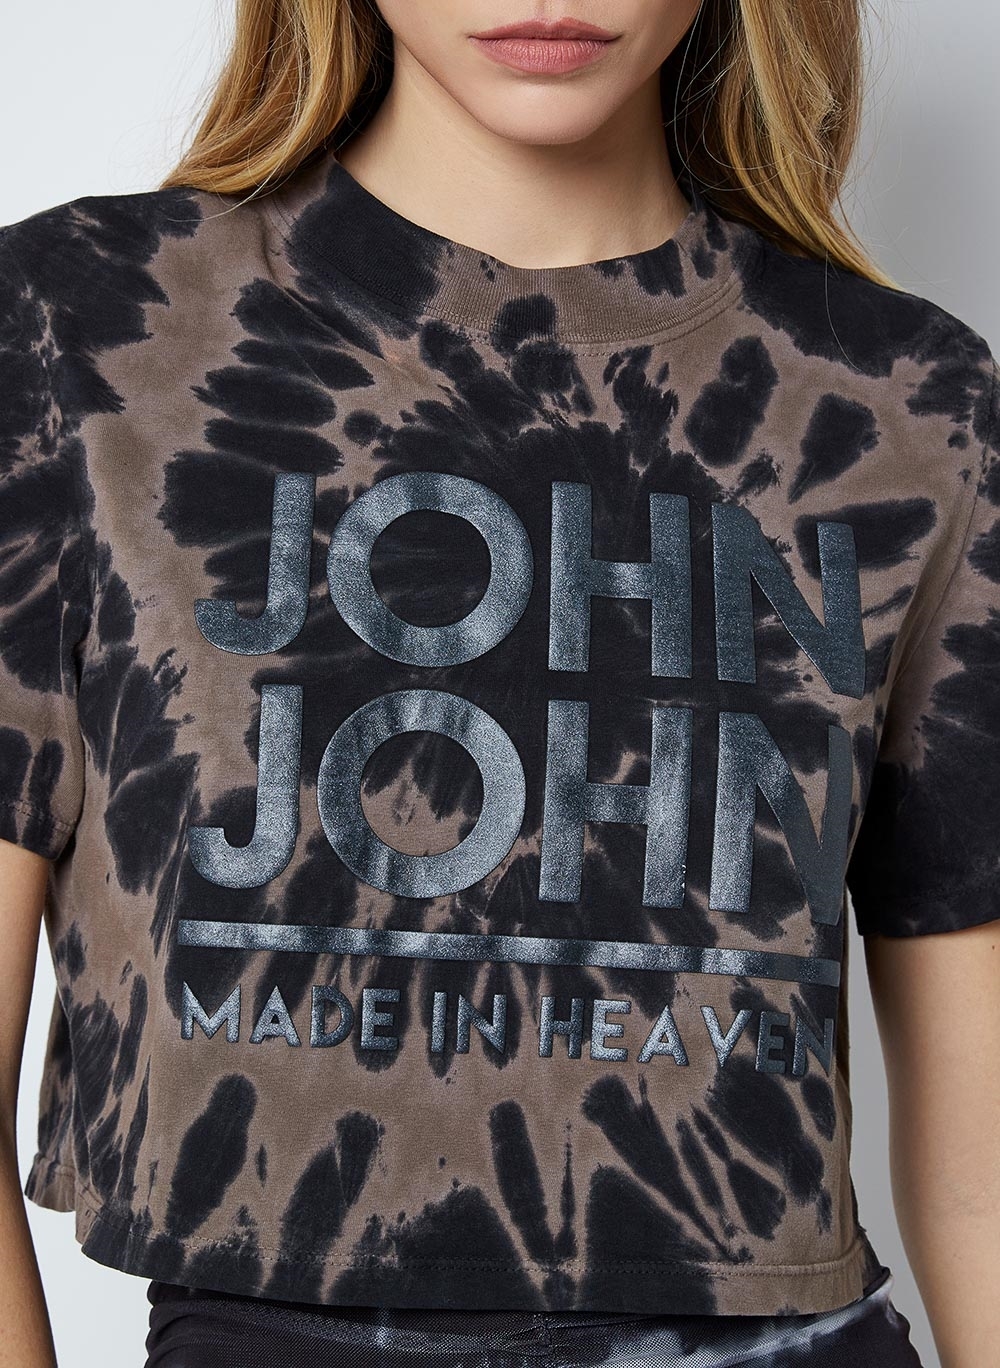 Camiseta Seatle John John Feminina 03.01.1228 - Camiseta Seatle